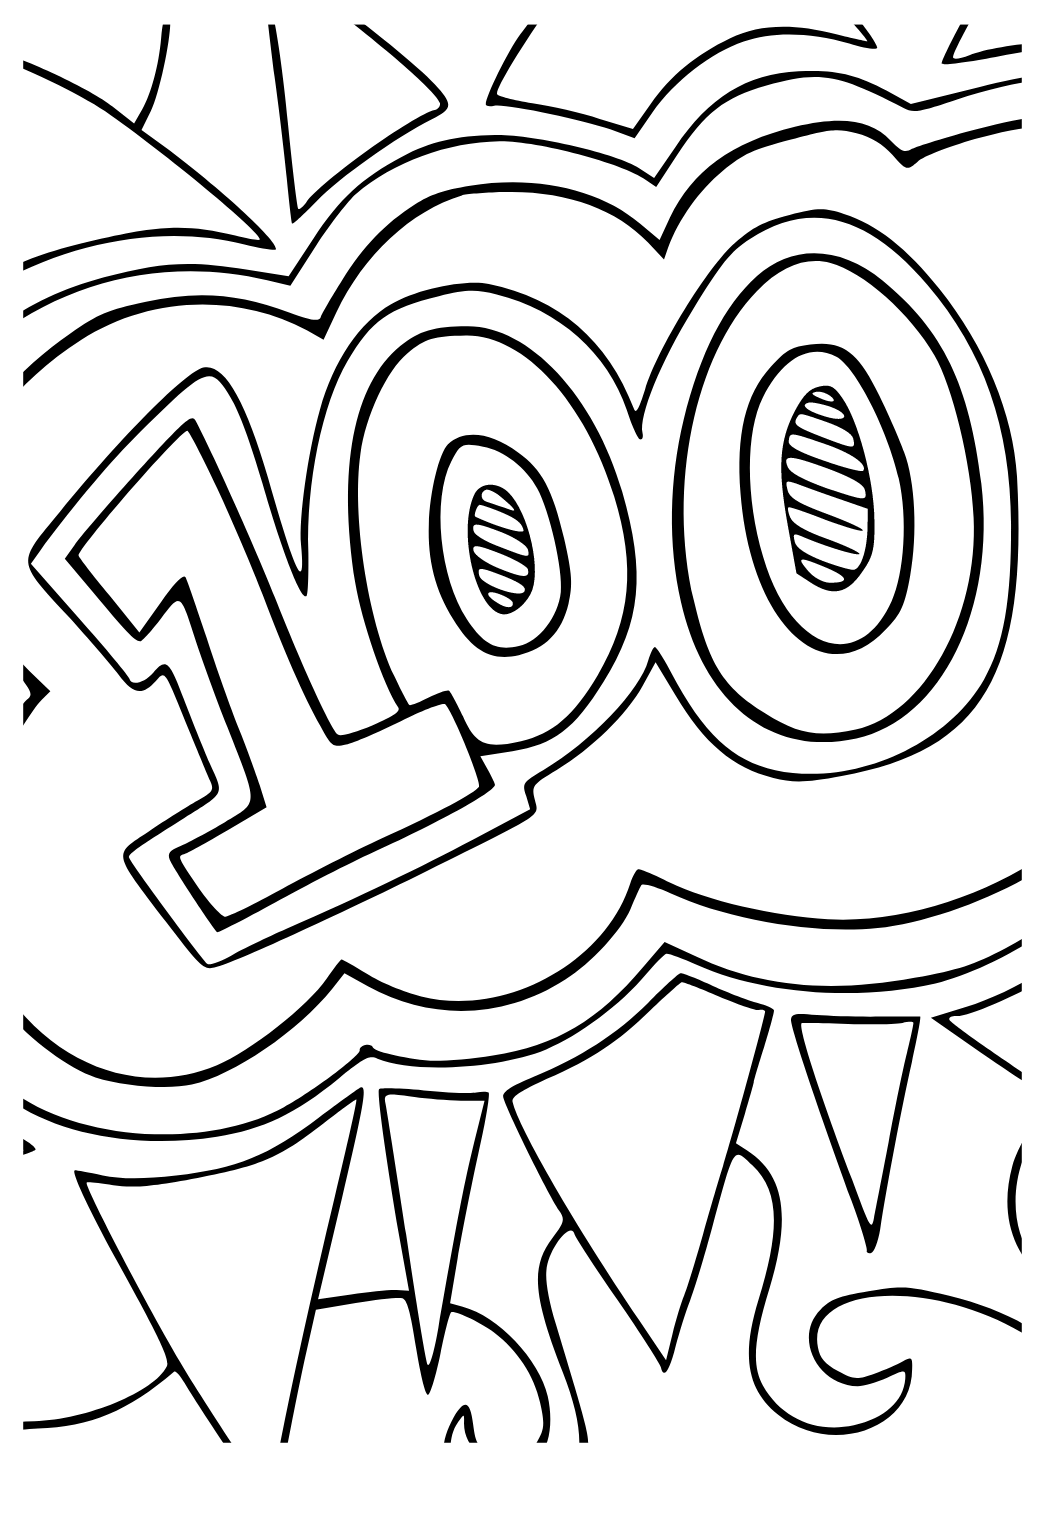 A 100-a Zi a Școlii